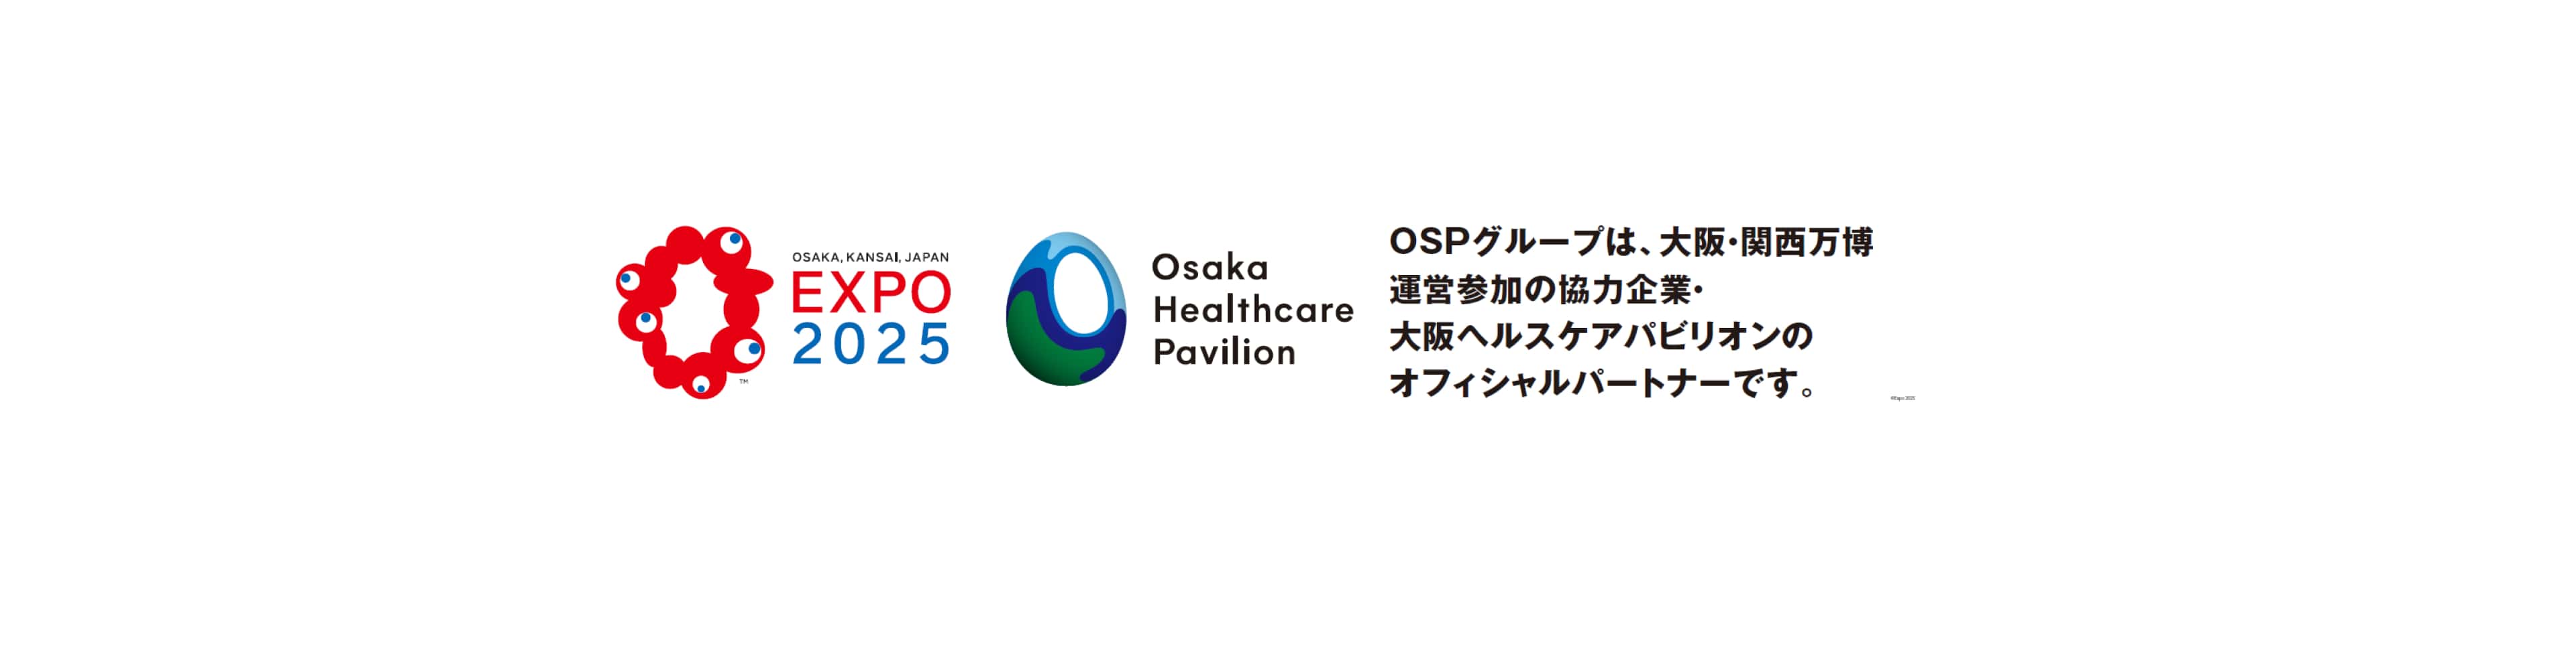 OSPグループは、大阪・関西万博運営参加に協力しています。